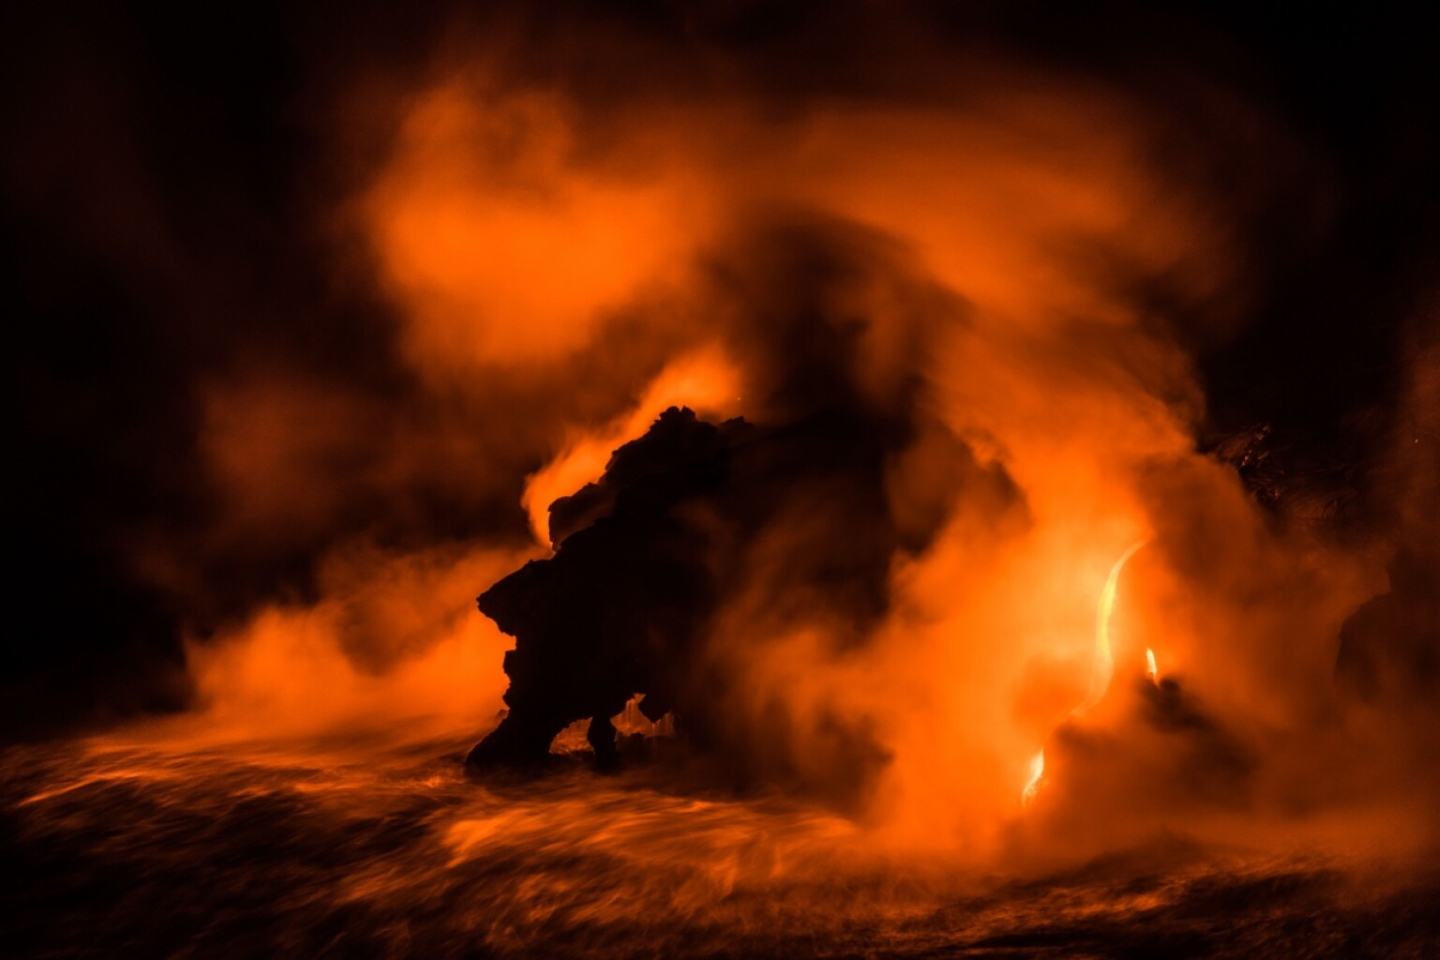 «Ярость богини Пеле». Замечательное произведение искусства в категории "Красота природы". Пе́ле (гав. Pele) - богиня вулканов, огня и сильного ветра в гавайской религии. Большой остров - Гавайи. Фото: © Barbara Dall'angelo